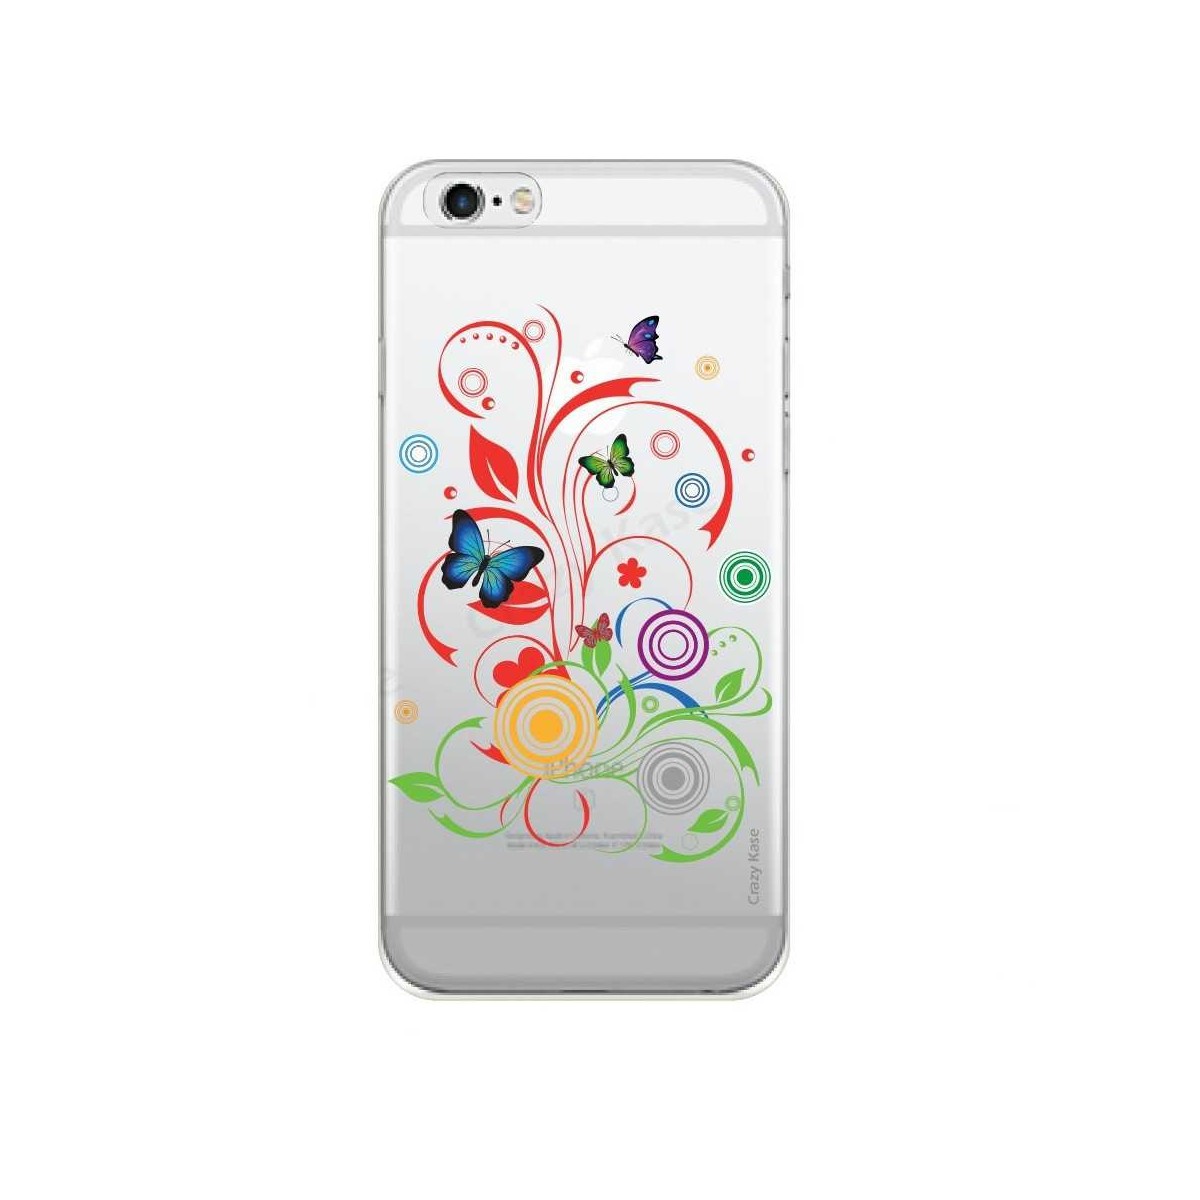 Coque iPhone 6 / 6s transparente souple motif Papillons et Cercles - Crazy Kase